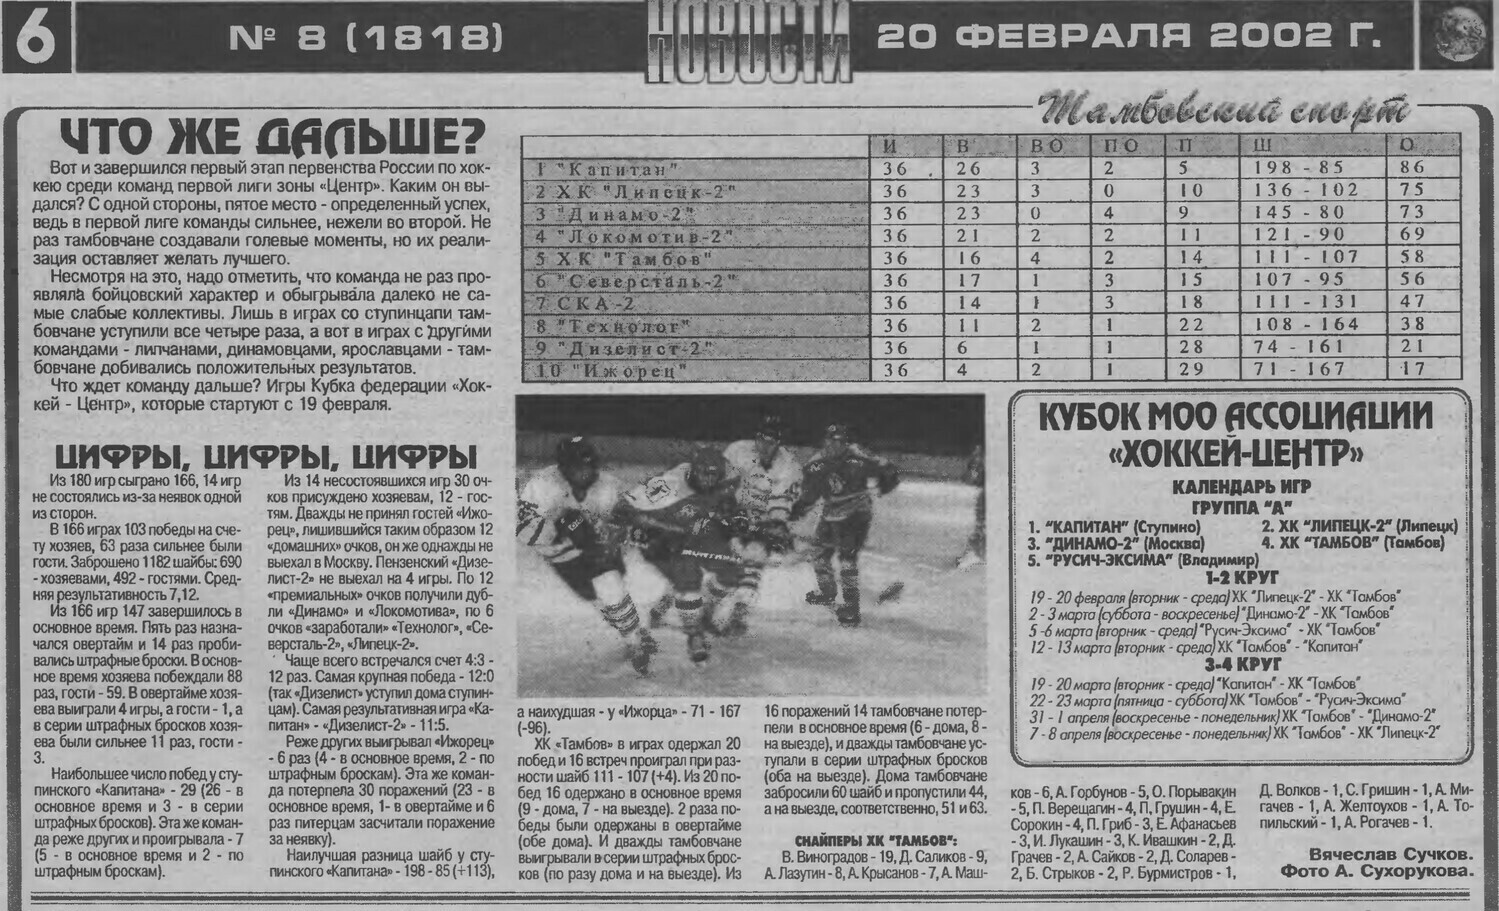 Газета "Новости. Тамбовский спорт" №1818 от 20.02.2002г.